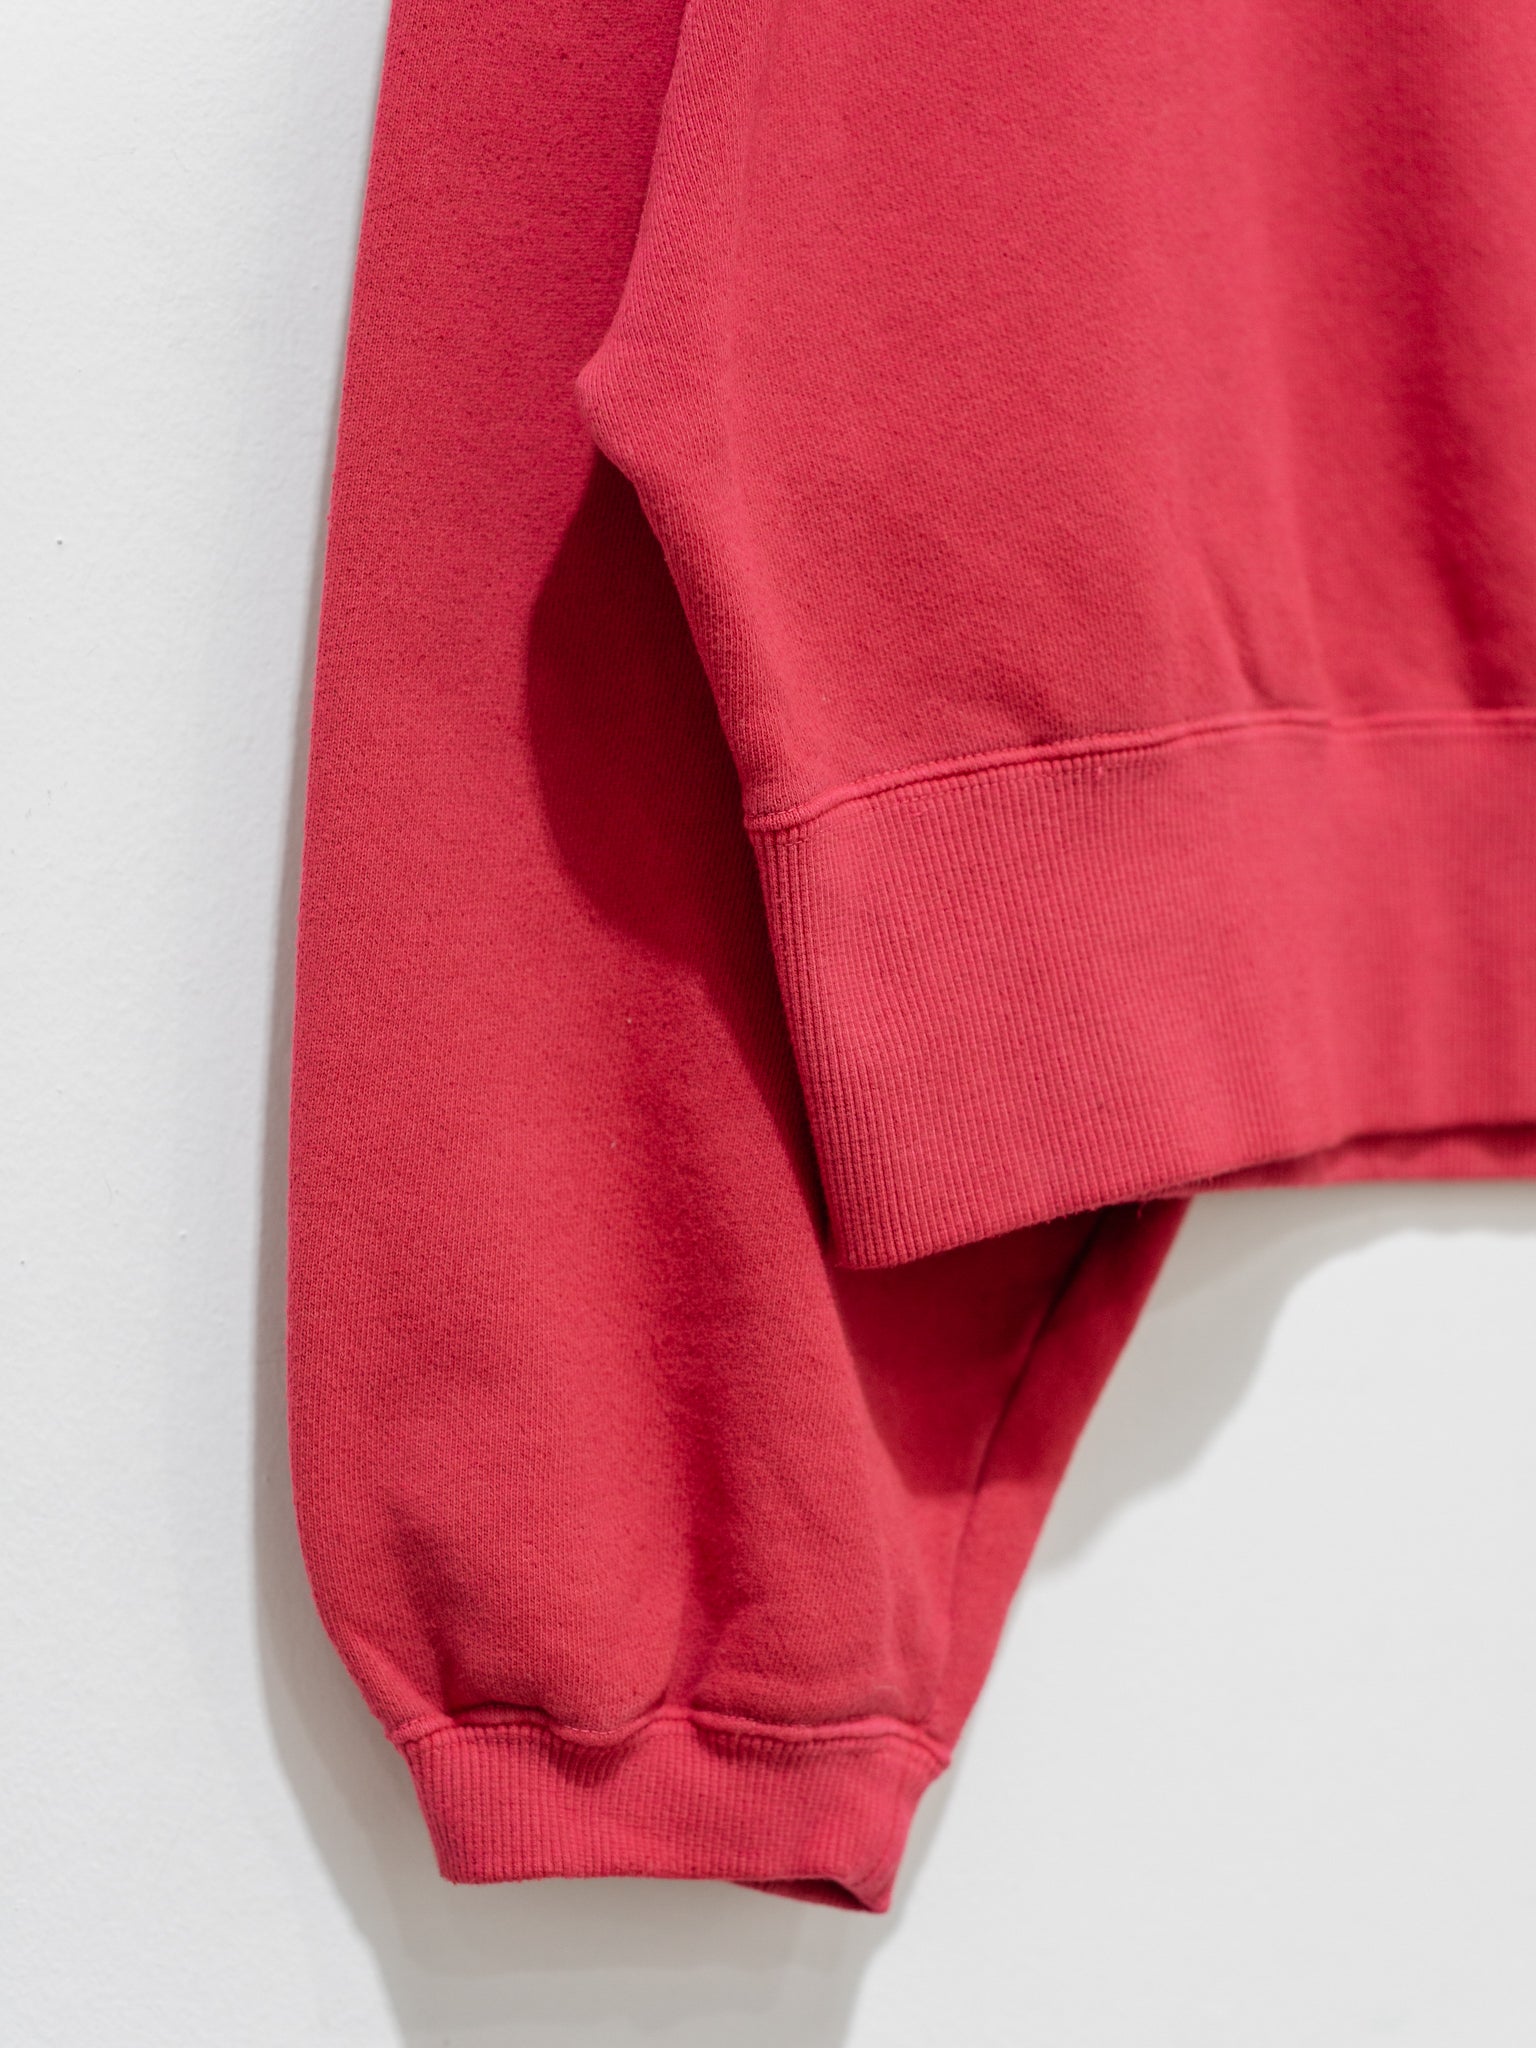 Namu Shop - ICHI Sweatshirt - Red